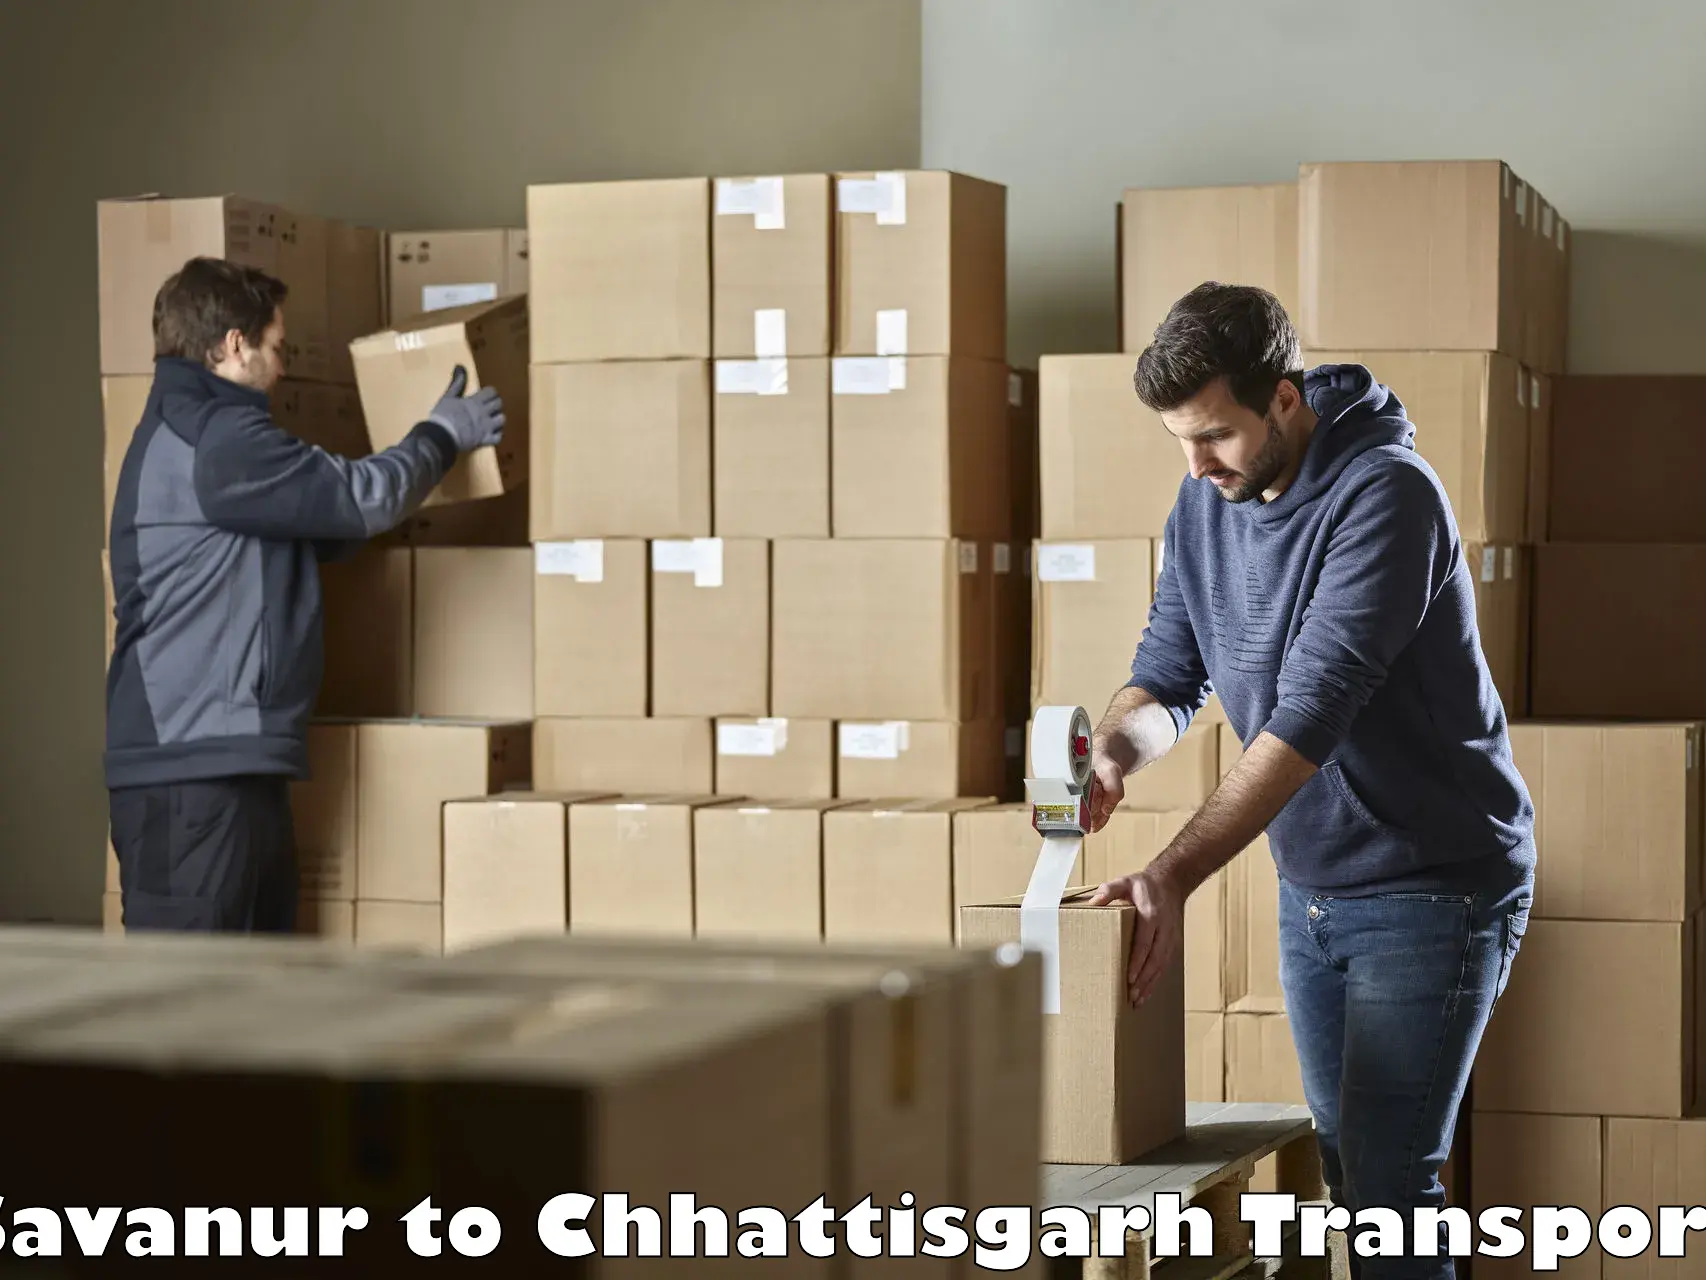 Road transport online services Savanur to Bijapur Chhattisgarh